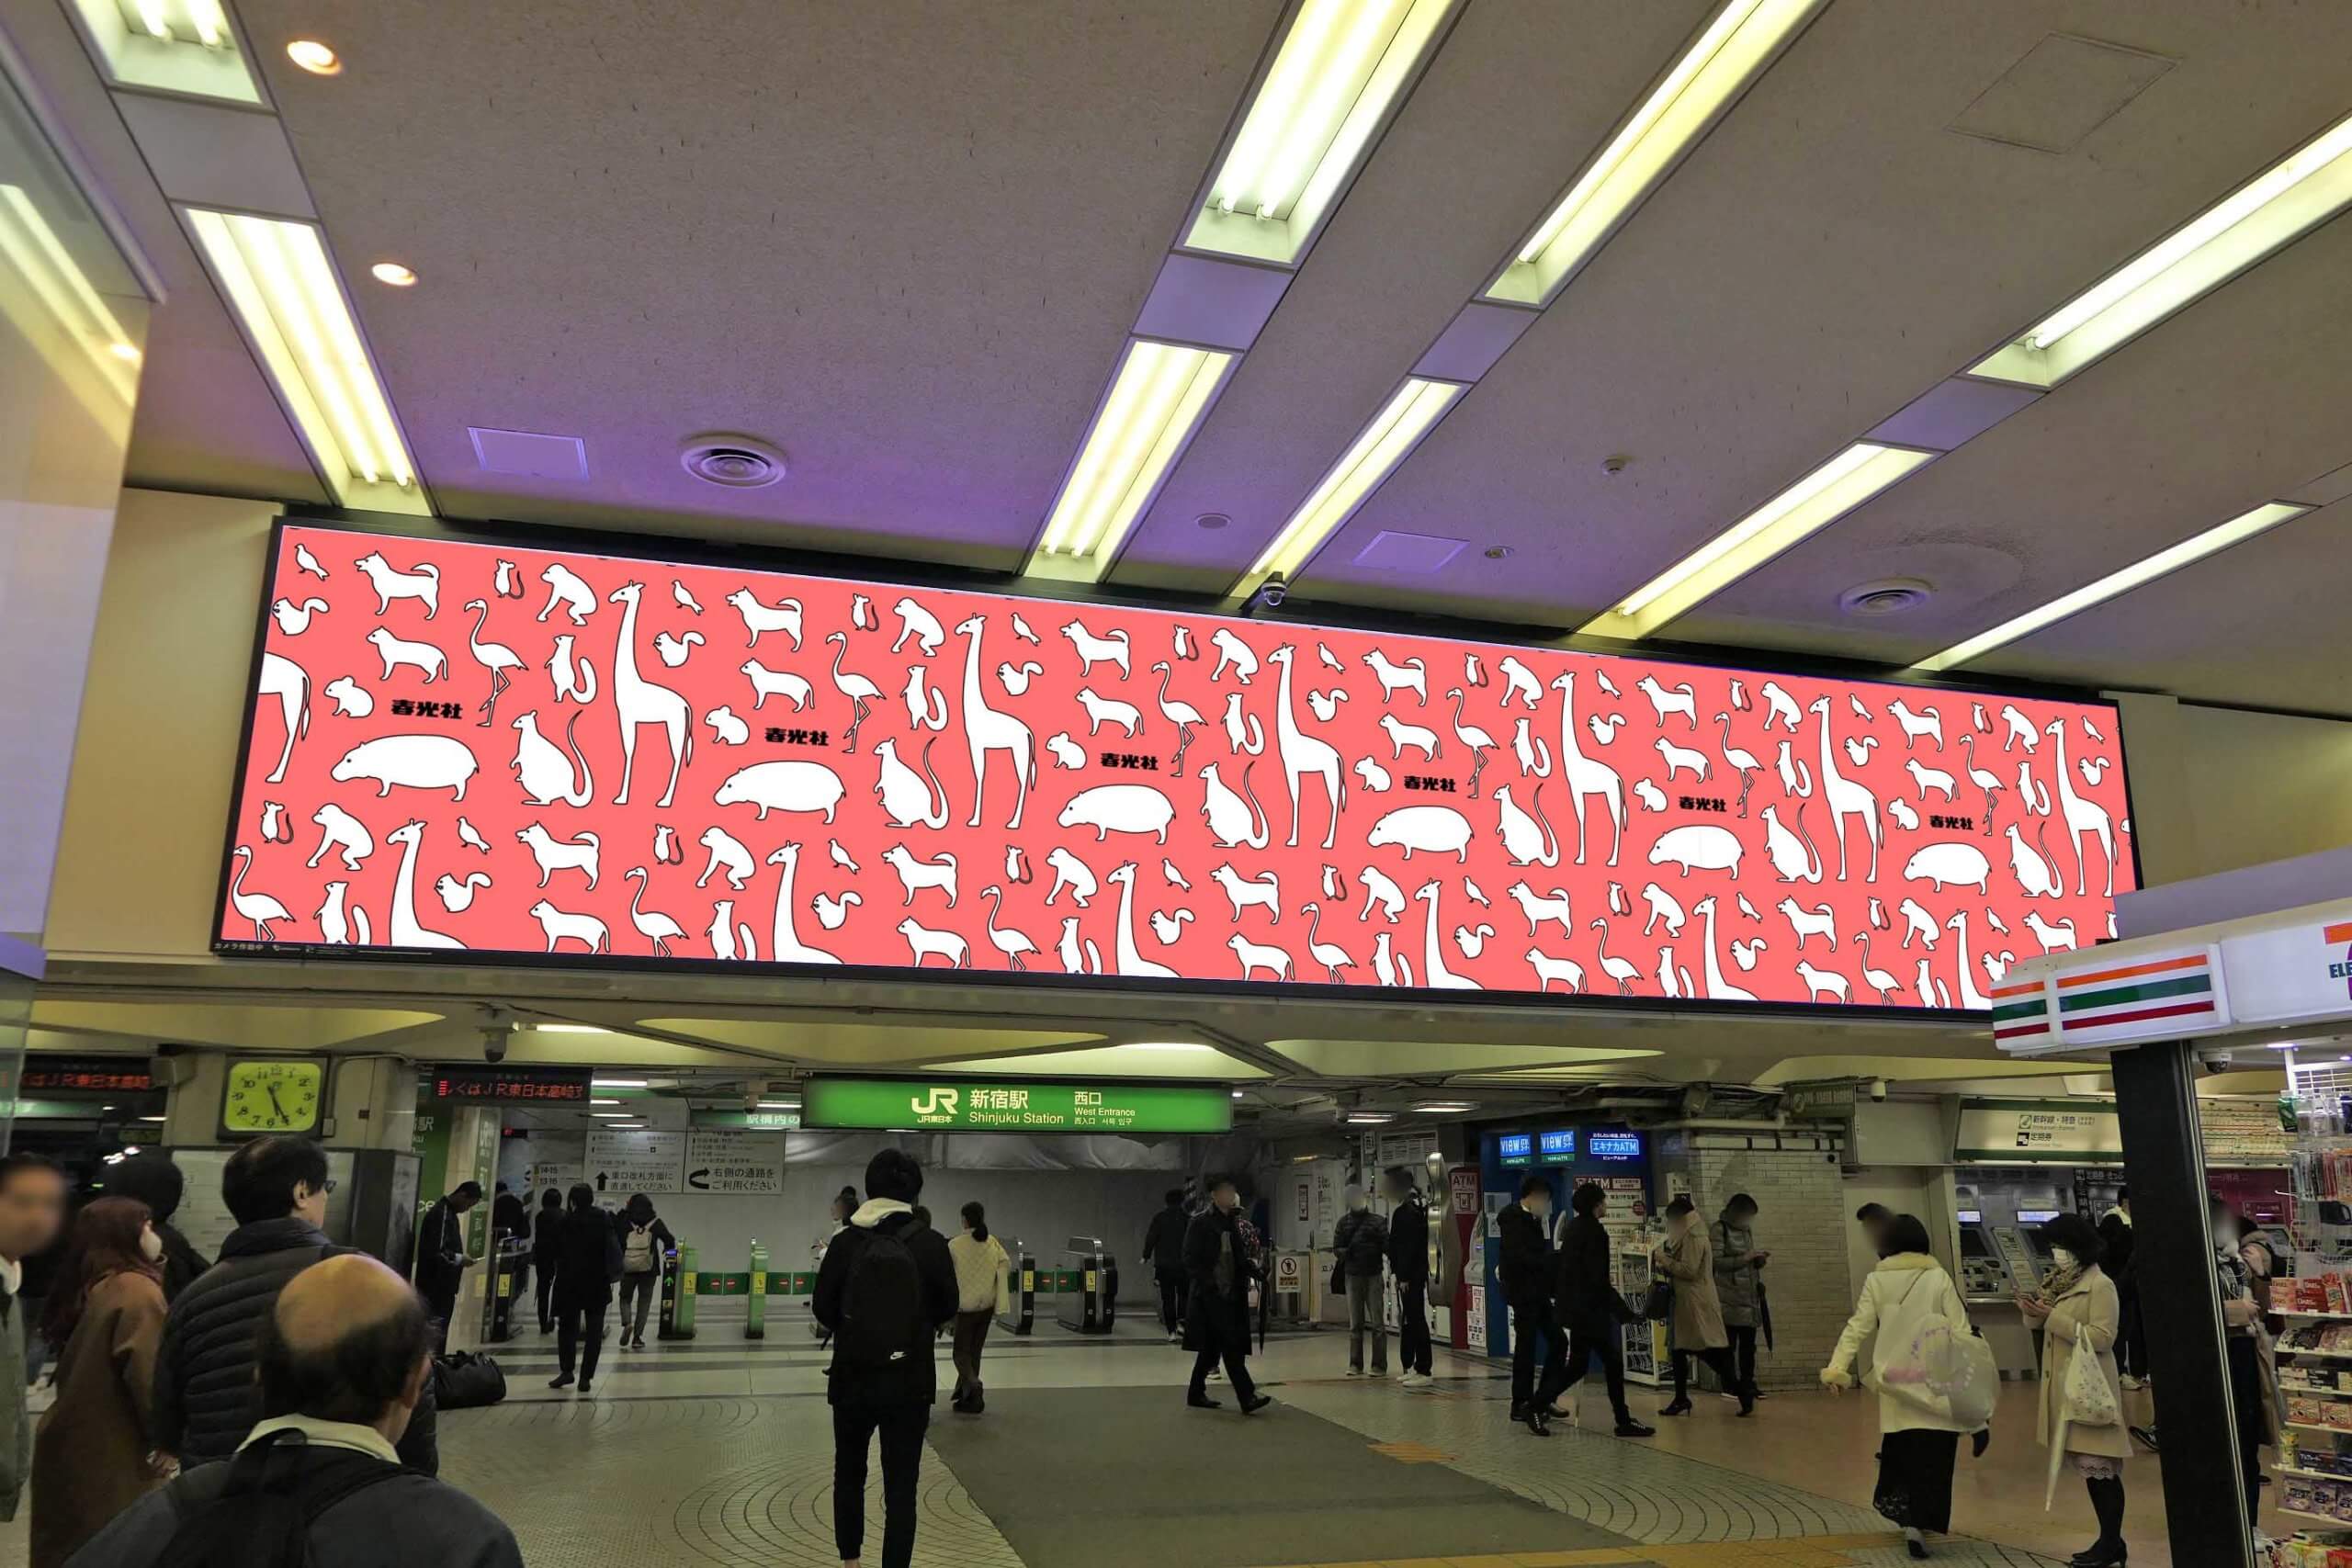 小田急新宿駅西口地下エリア、乗降客の多いエリアの天井付近の壁面に掲出される、大画面のデジタルサイネージ媒体